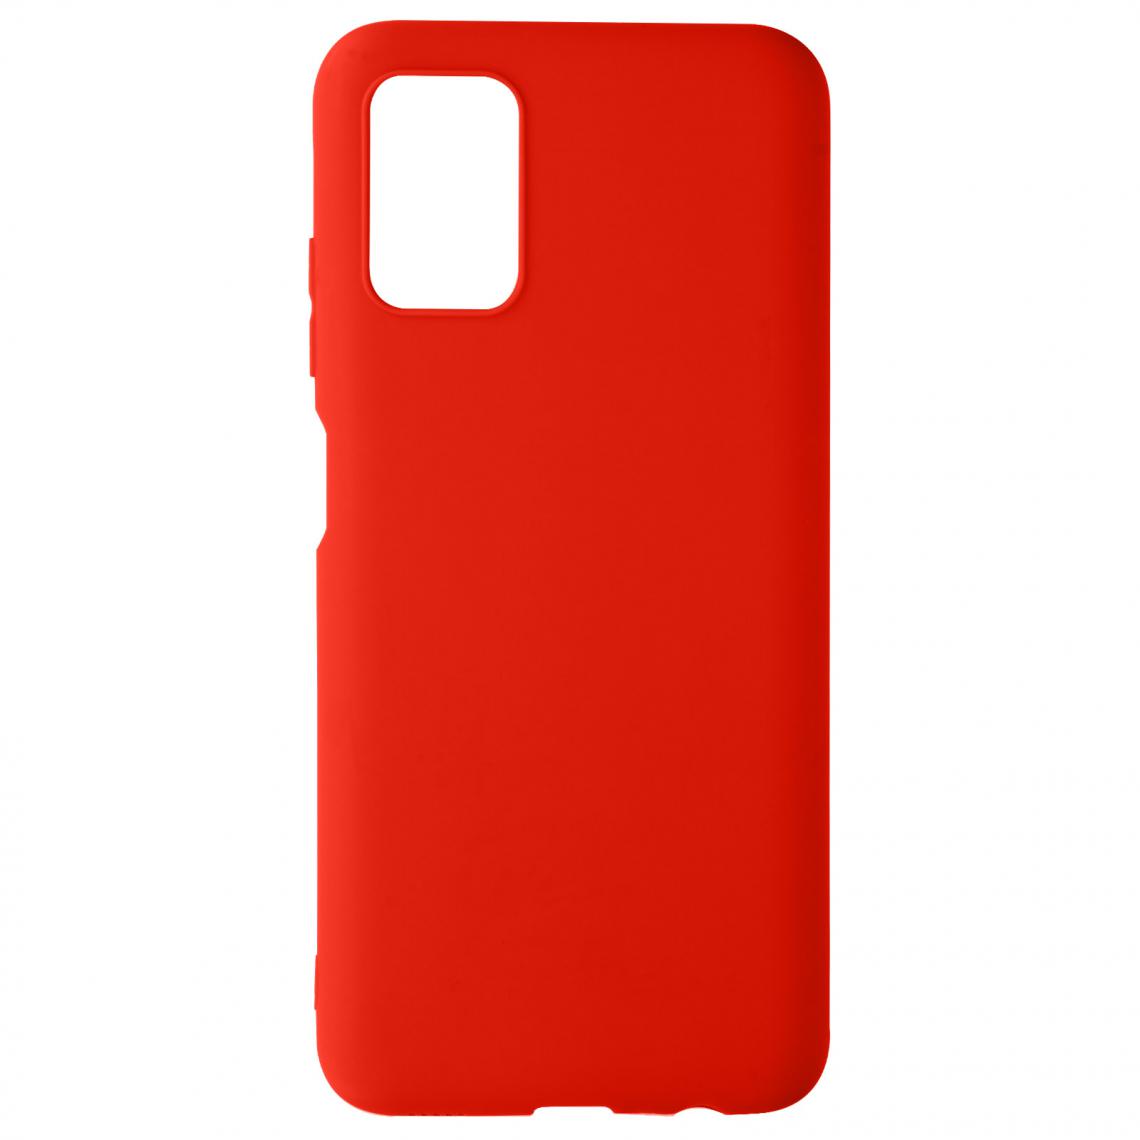 Avizar - Coque mate Samsung A03s Rouge - Coque, étui smartphone